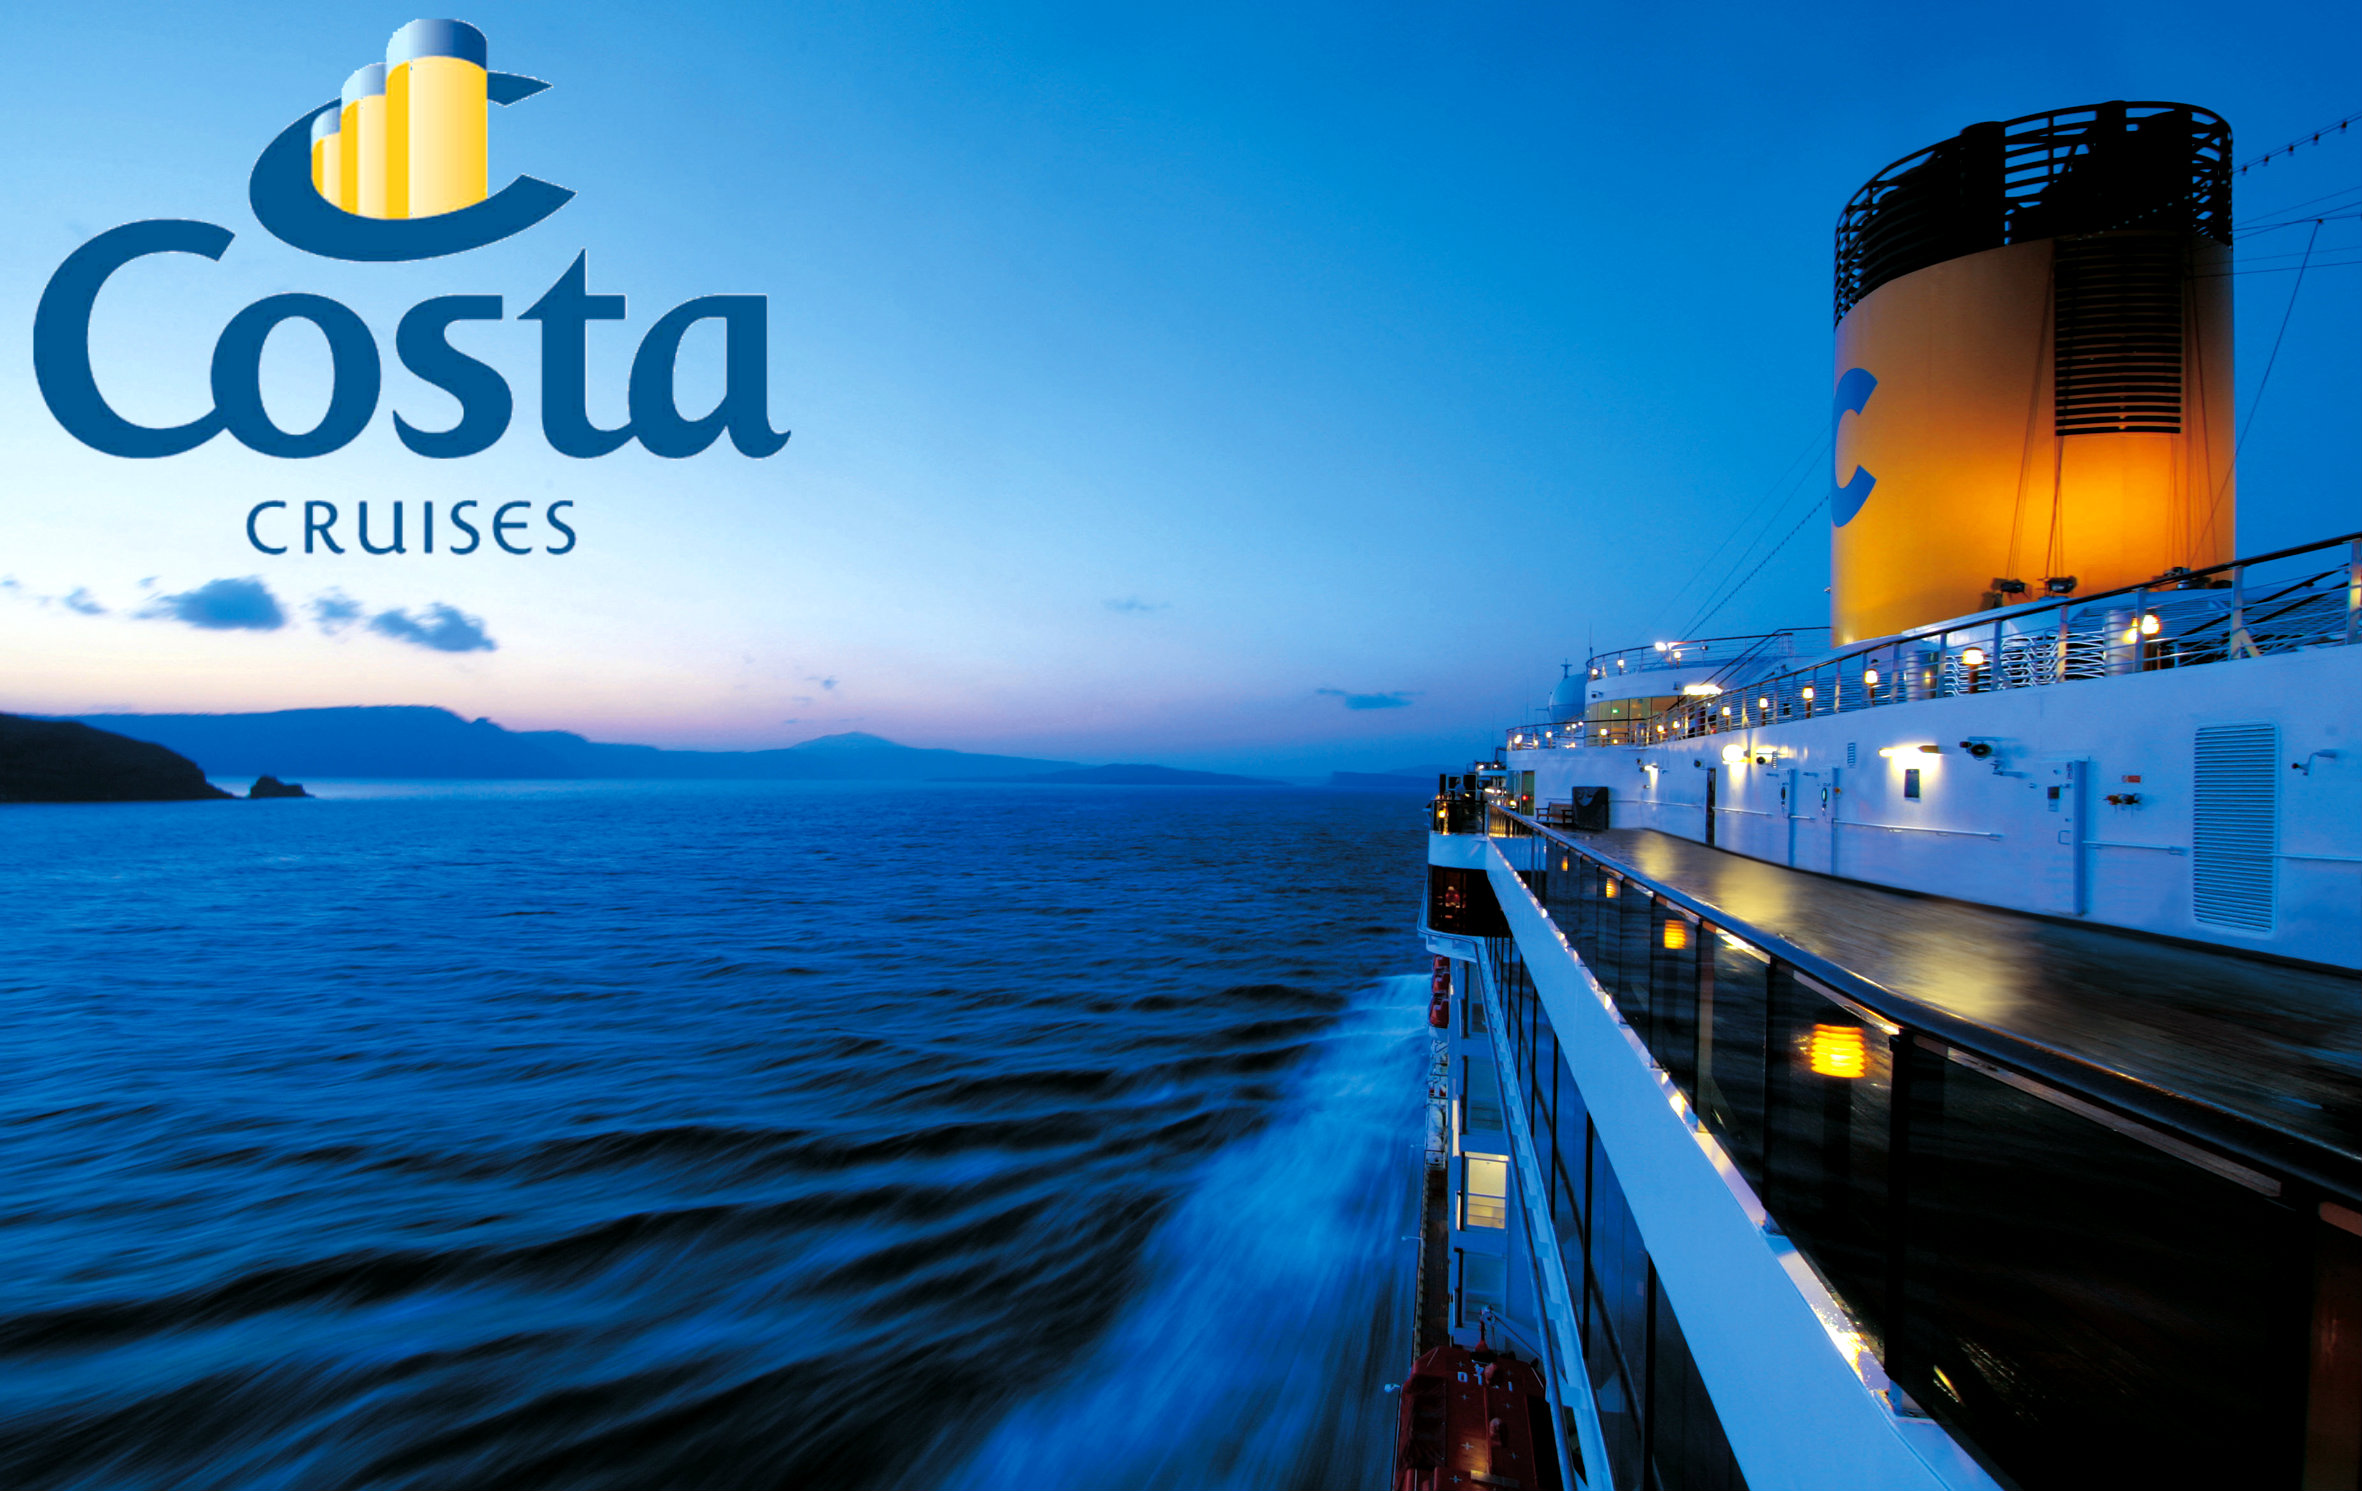   Costa Cruises 